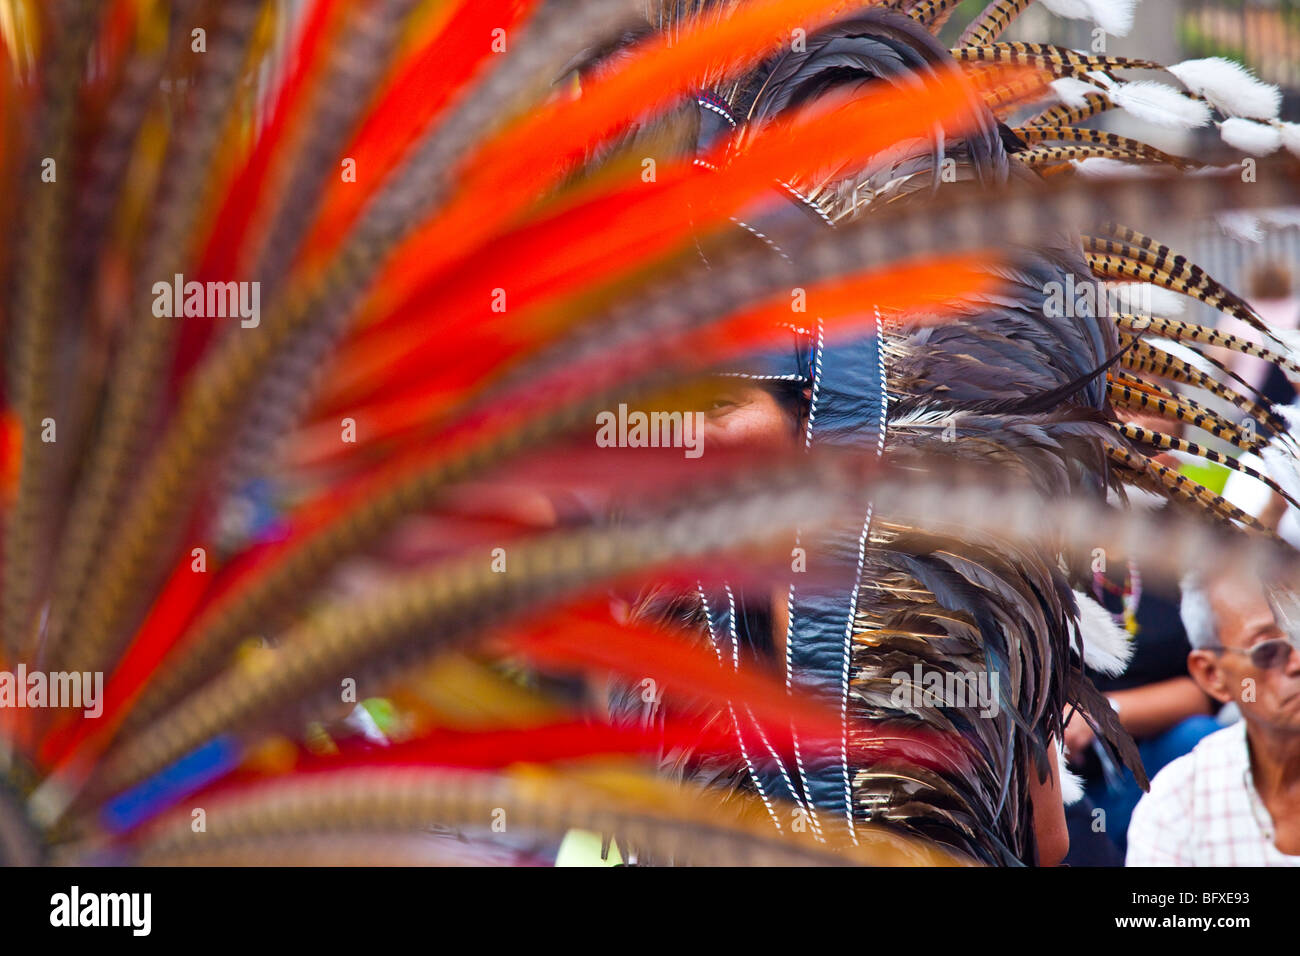 La coiffure de plumes d'un danseur aztèque sur la Plaza de la Constitucion dans Mexico City Banque D'Images